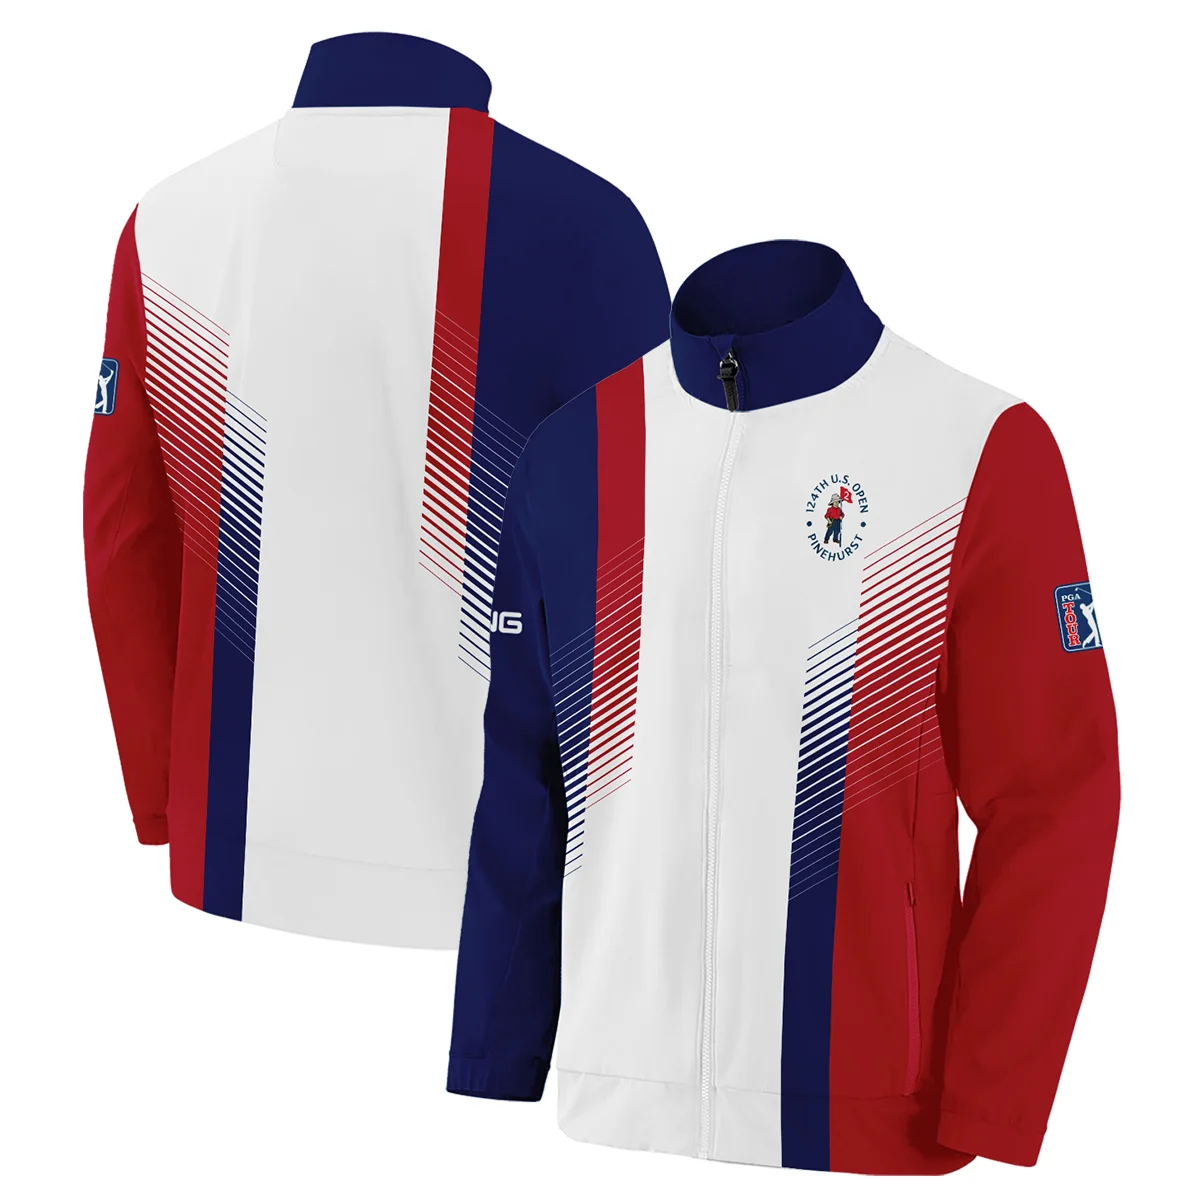 124th U.S. Open Pinehurst Sports Ping Zipper Hoodie Shirt Golf Blue Red All Over Print Zipper Hoodie Shirt